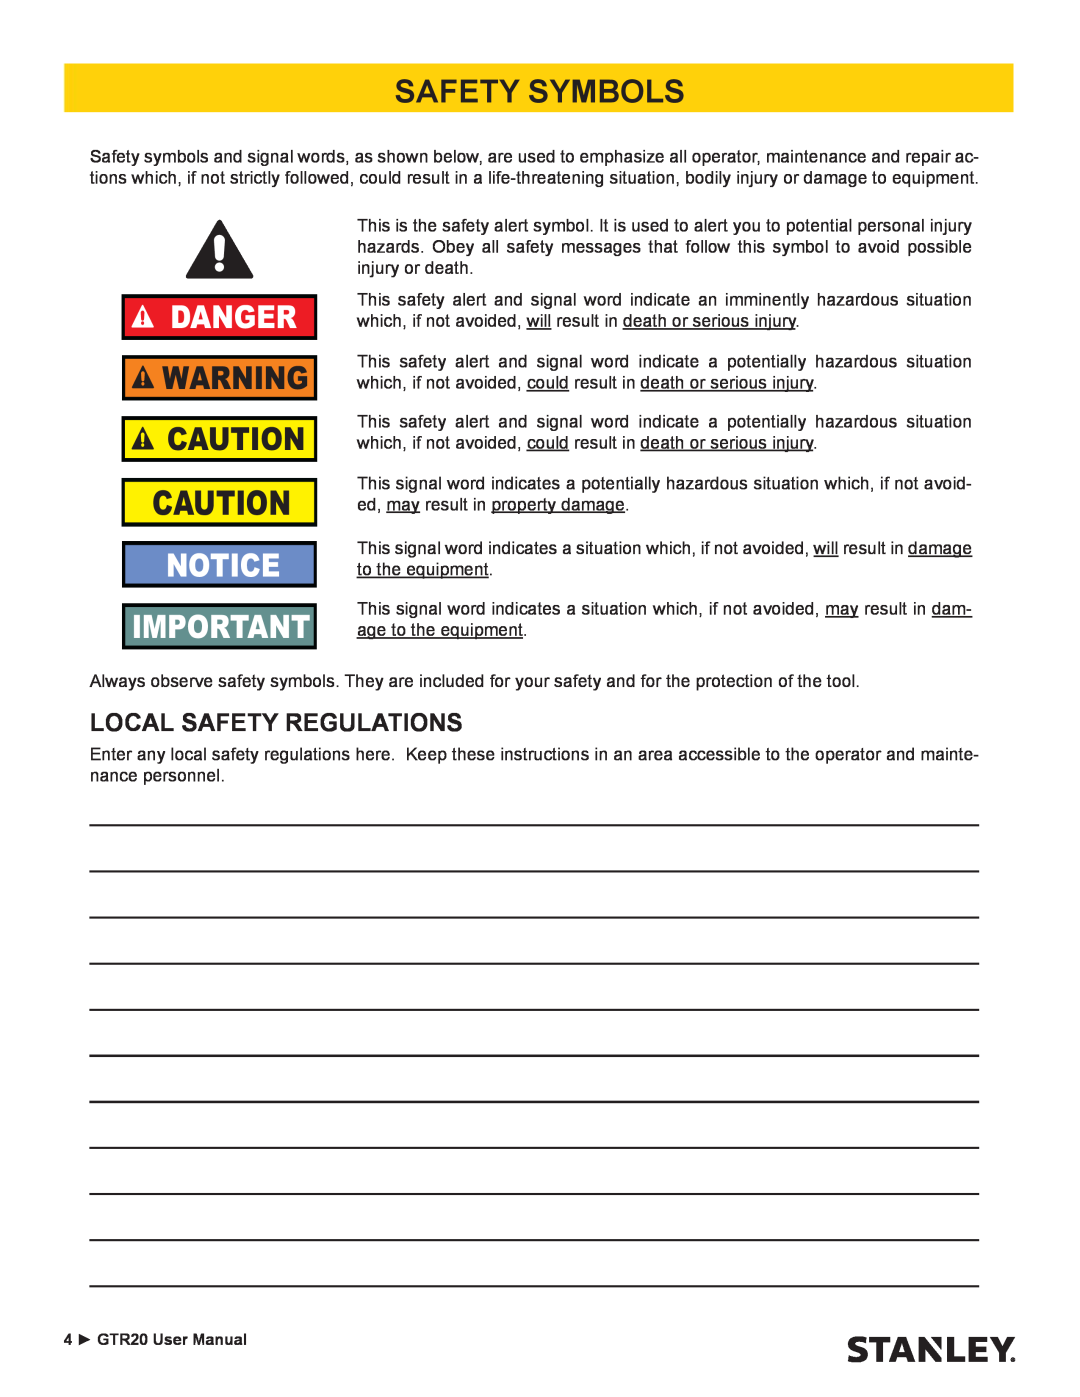 Stanley Black & Decker GTR20 user manual Safety Symbols, Local Safety Regulations, Danger 